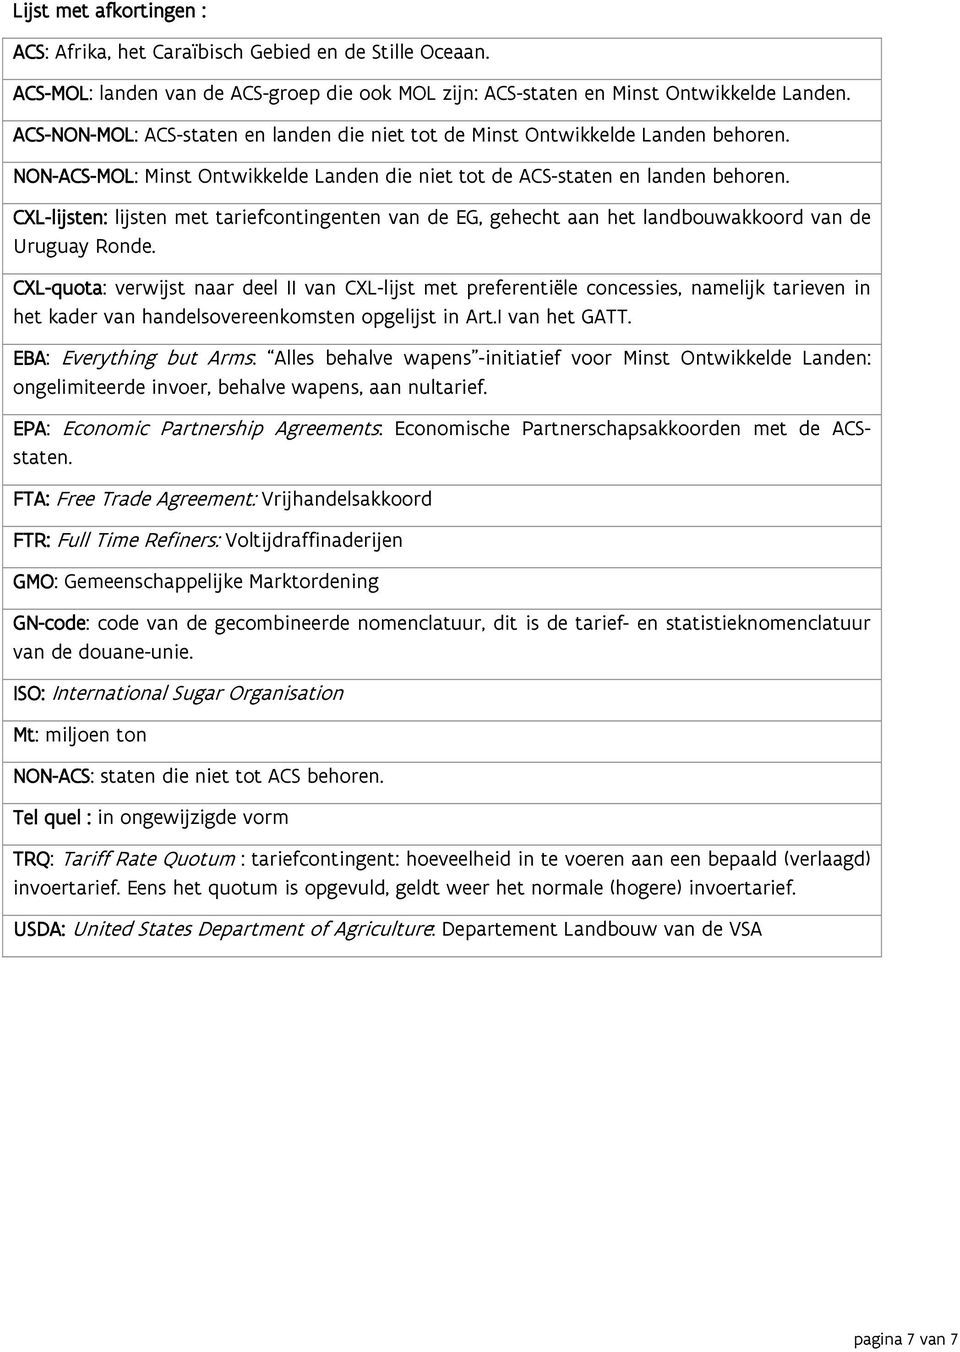 CXL-lijsten: lijsten met tariefcontingenten van de EG, gehecht aan het landbouwakkoord van de Uruguay Ronde.